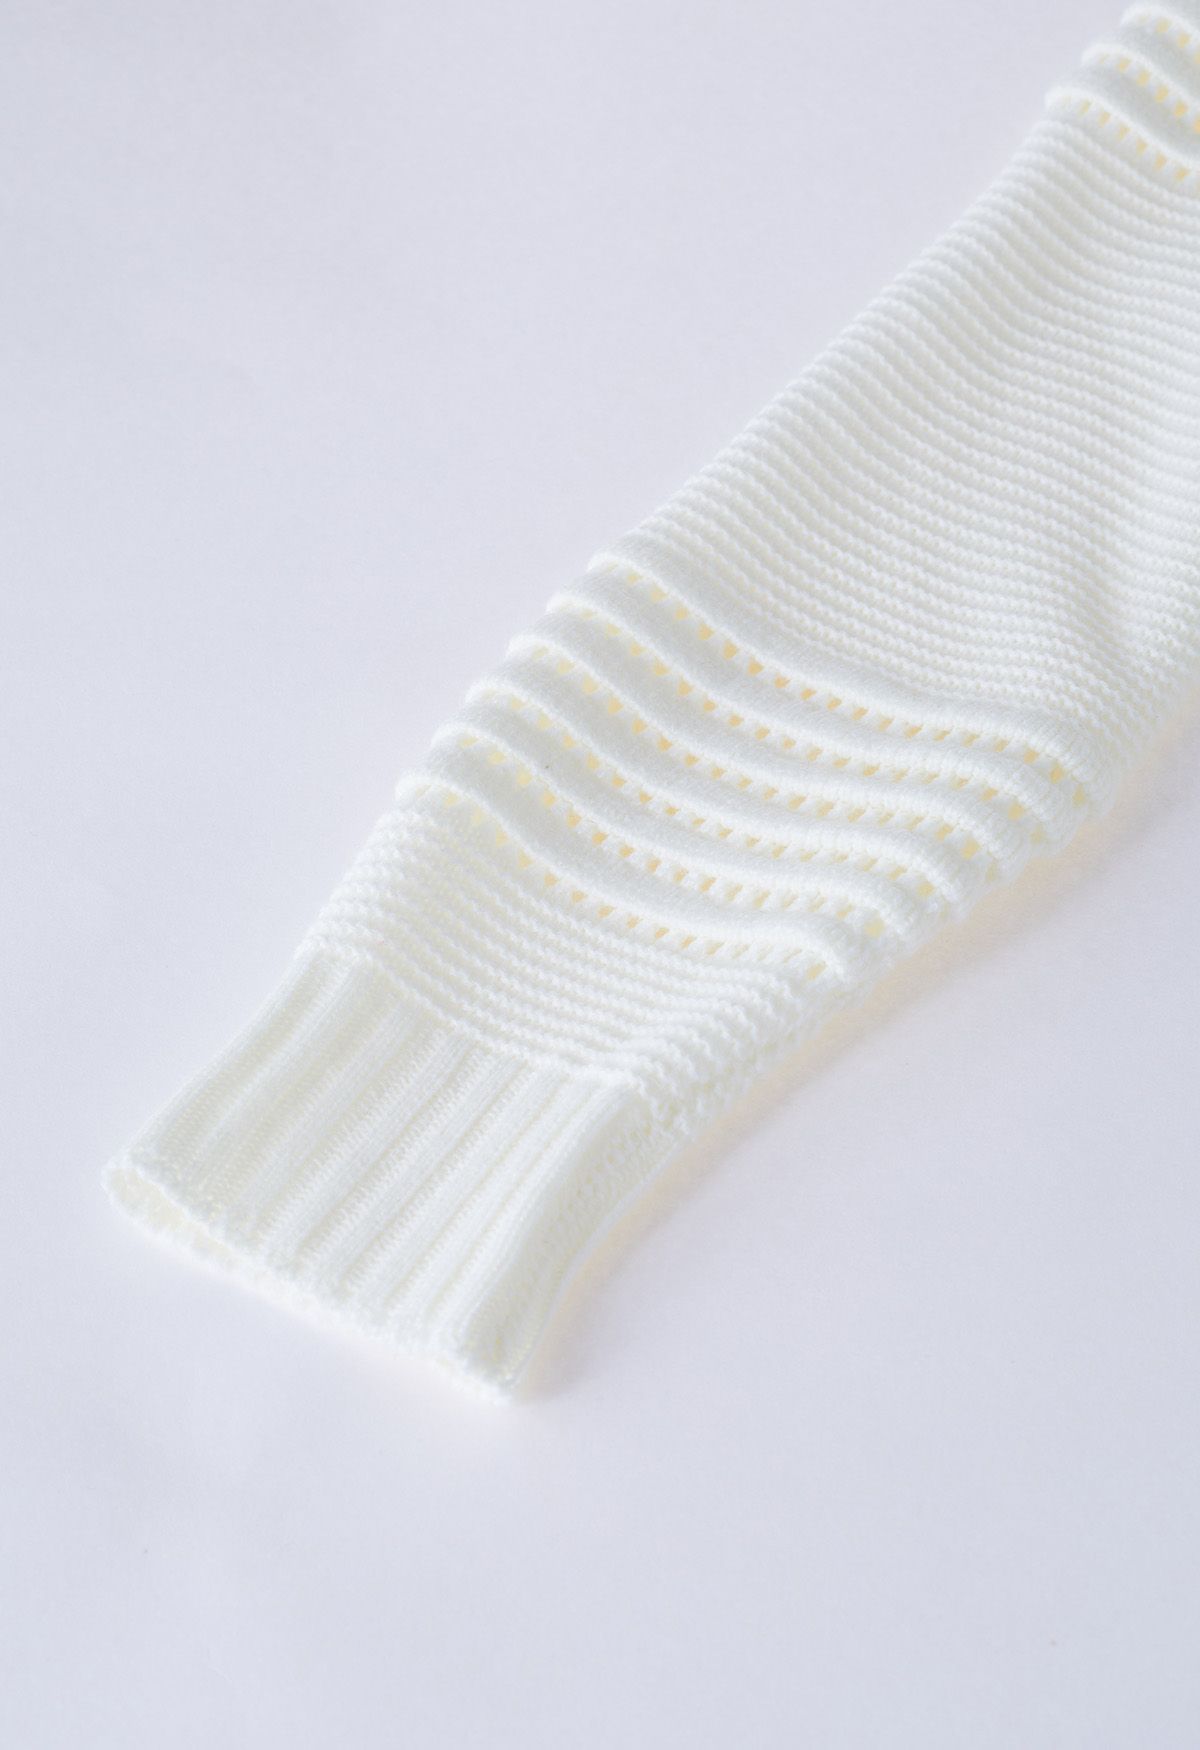 Suéter de punto calado con rayas en relieve en blanco